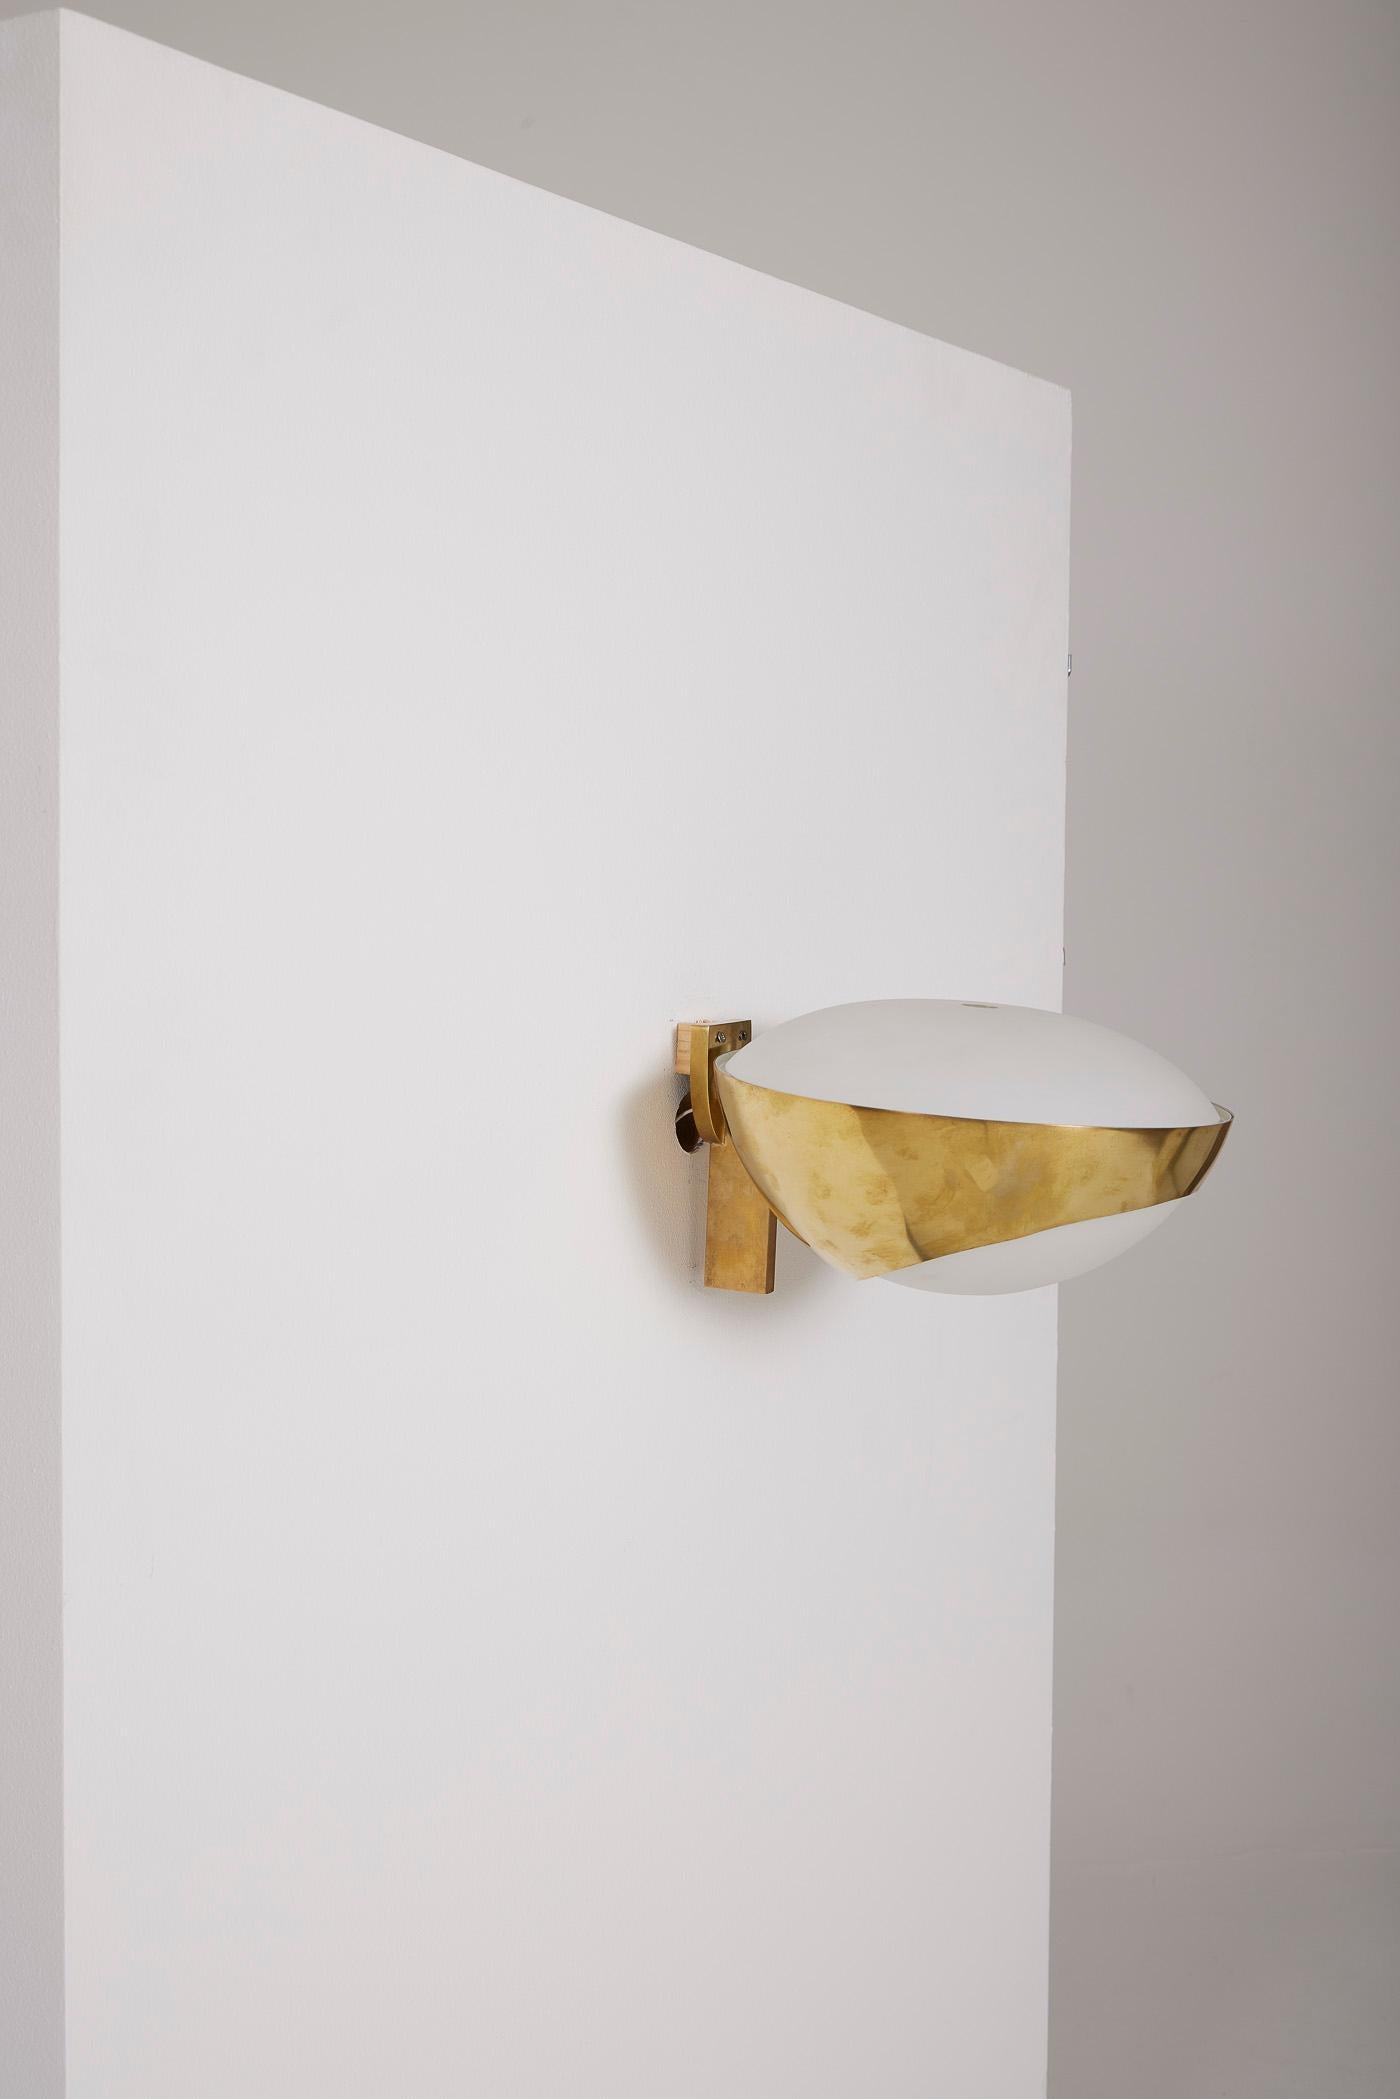 Wandleuchte des Designers Max Ingrand für Fontana Arte, 1970er Jahre. Goldfarbene Metallstruktur und weiße Opalglas-Kugel. In perfektem Zustand.
LP1346